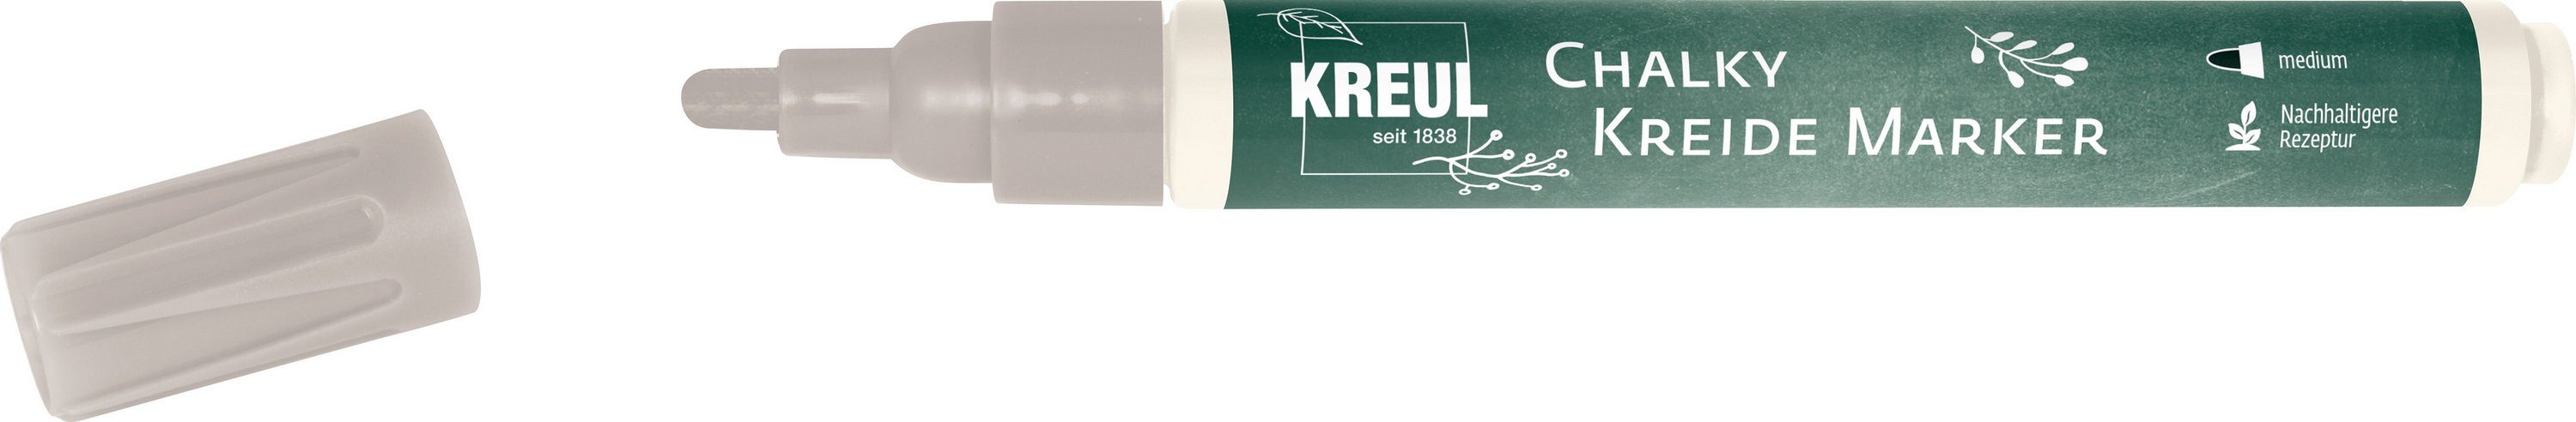 Kreul Kreidemarker Chalky, 2-3mm Strichstärke Noble Nougat | Marker